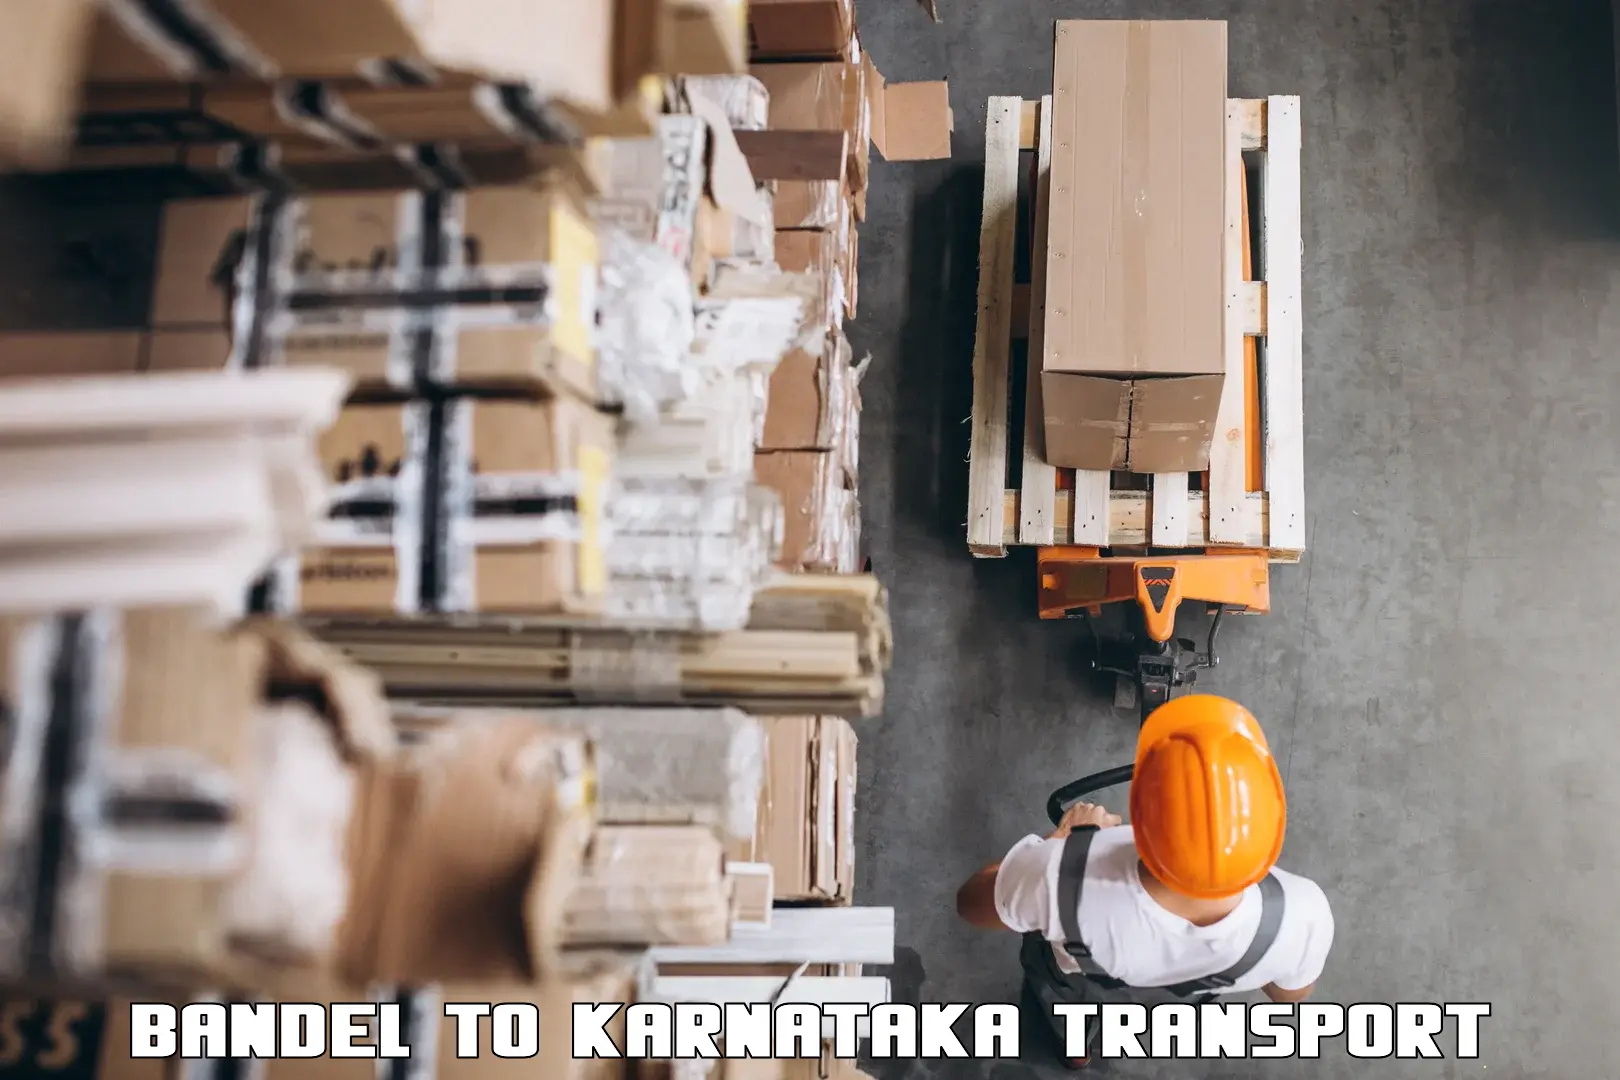 Cargo train transport services Bandel to Karkala